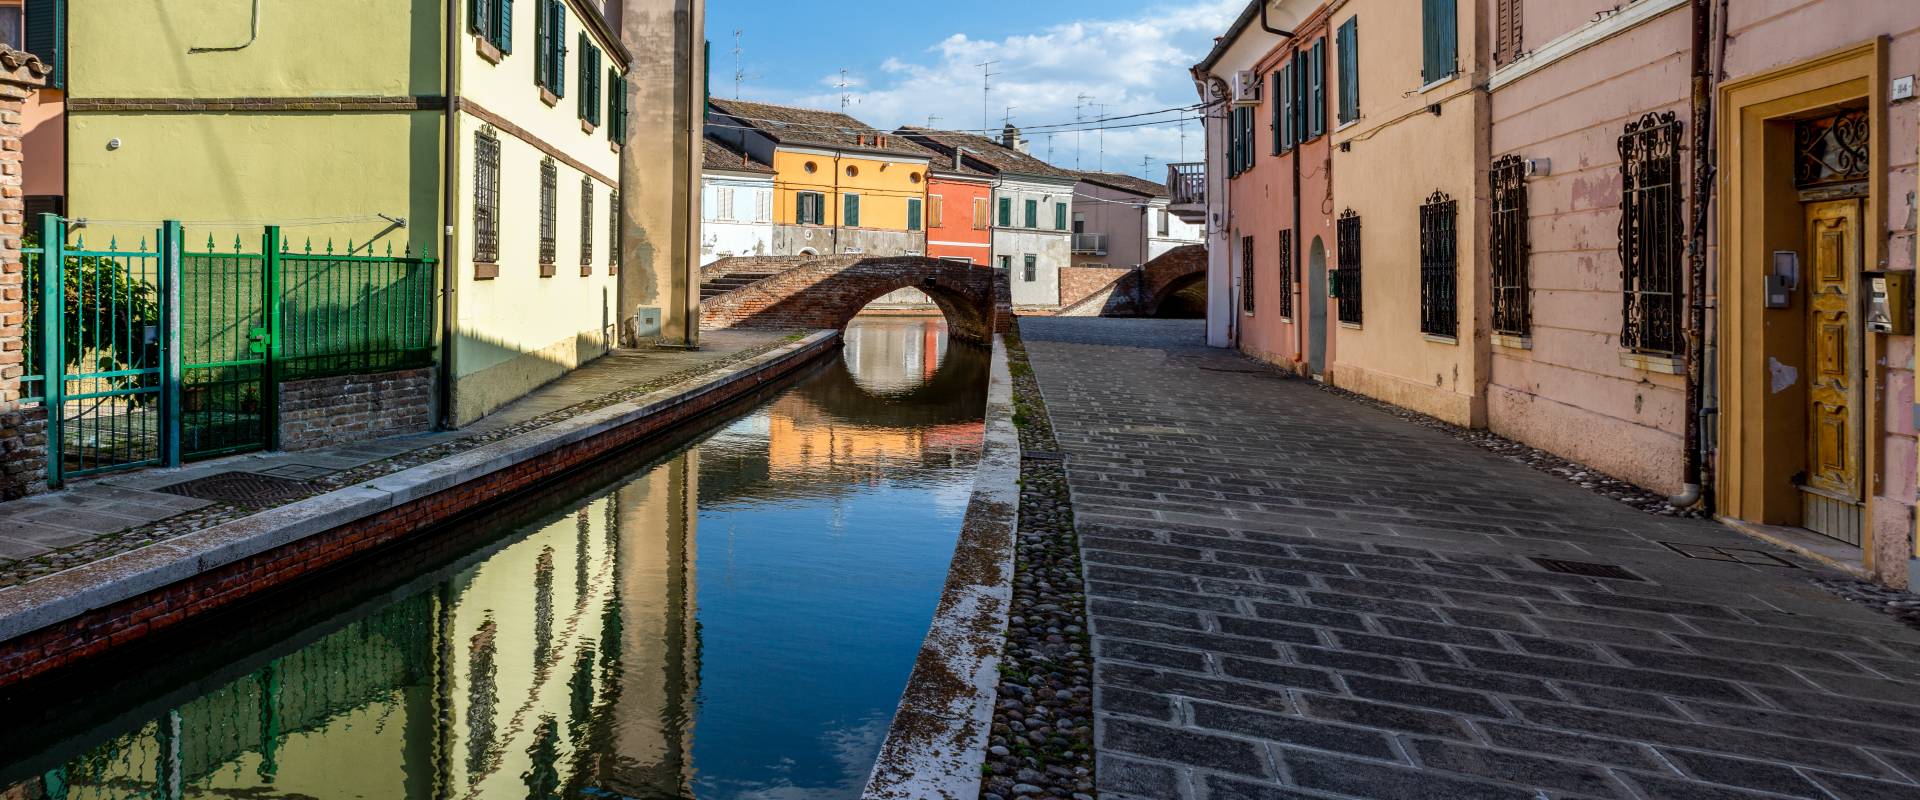 NlYDU Centro storico di Comacchio - Ponte dei Sisti photo by Vanni Lazzari